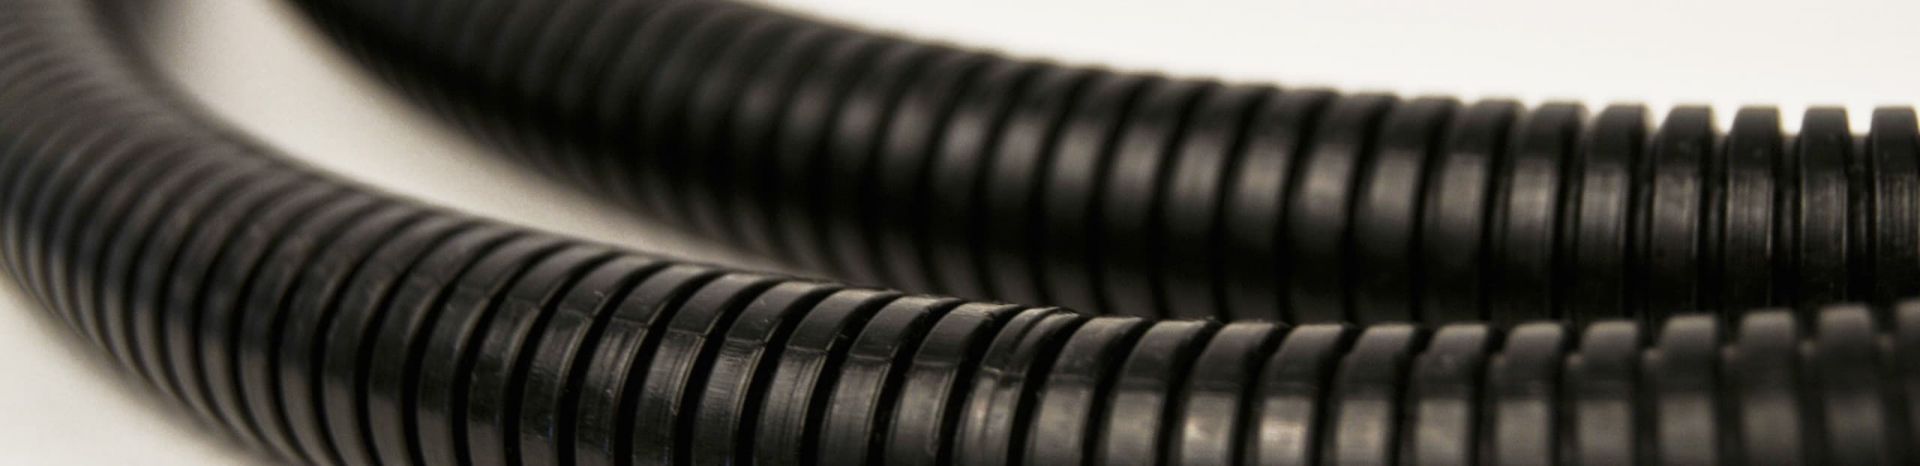 Kabelbinder metallzunge - Die qualitativsten Kabelbinder metallzunge unter die Lupe genommen!